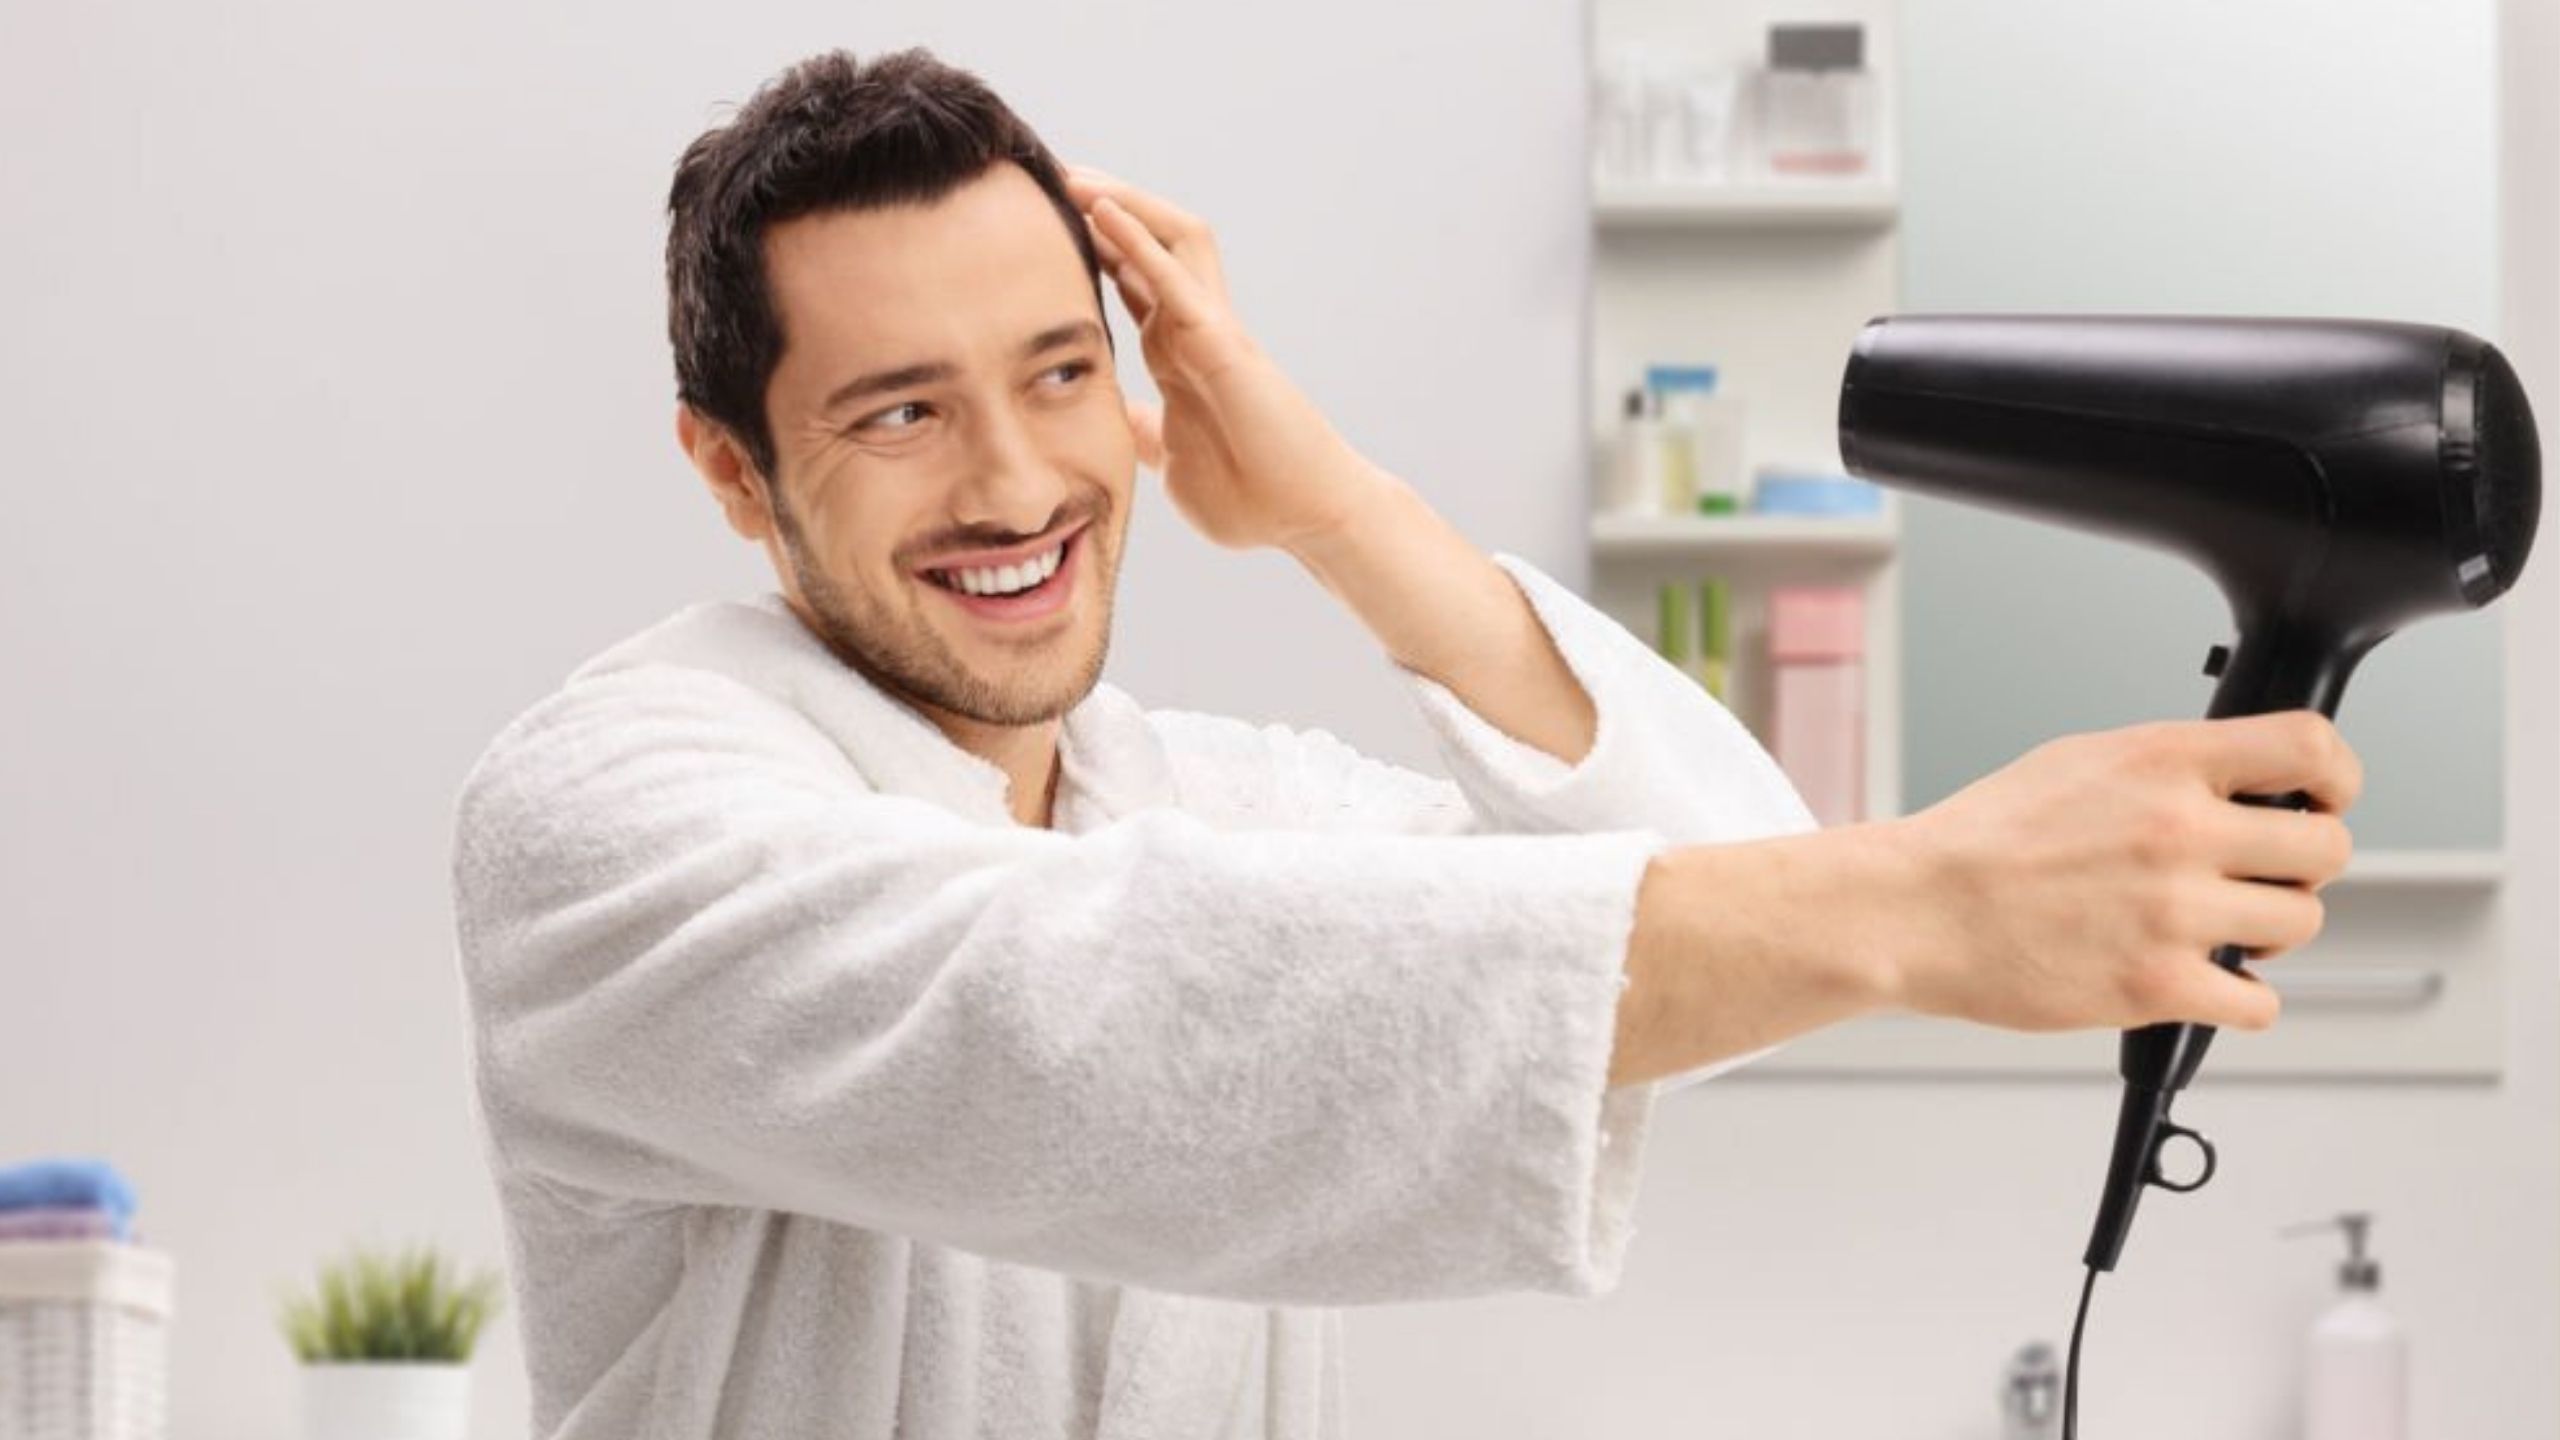 10 Best hair dryers for men